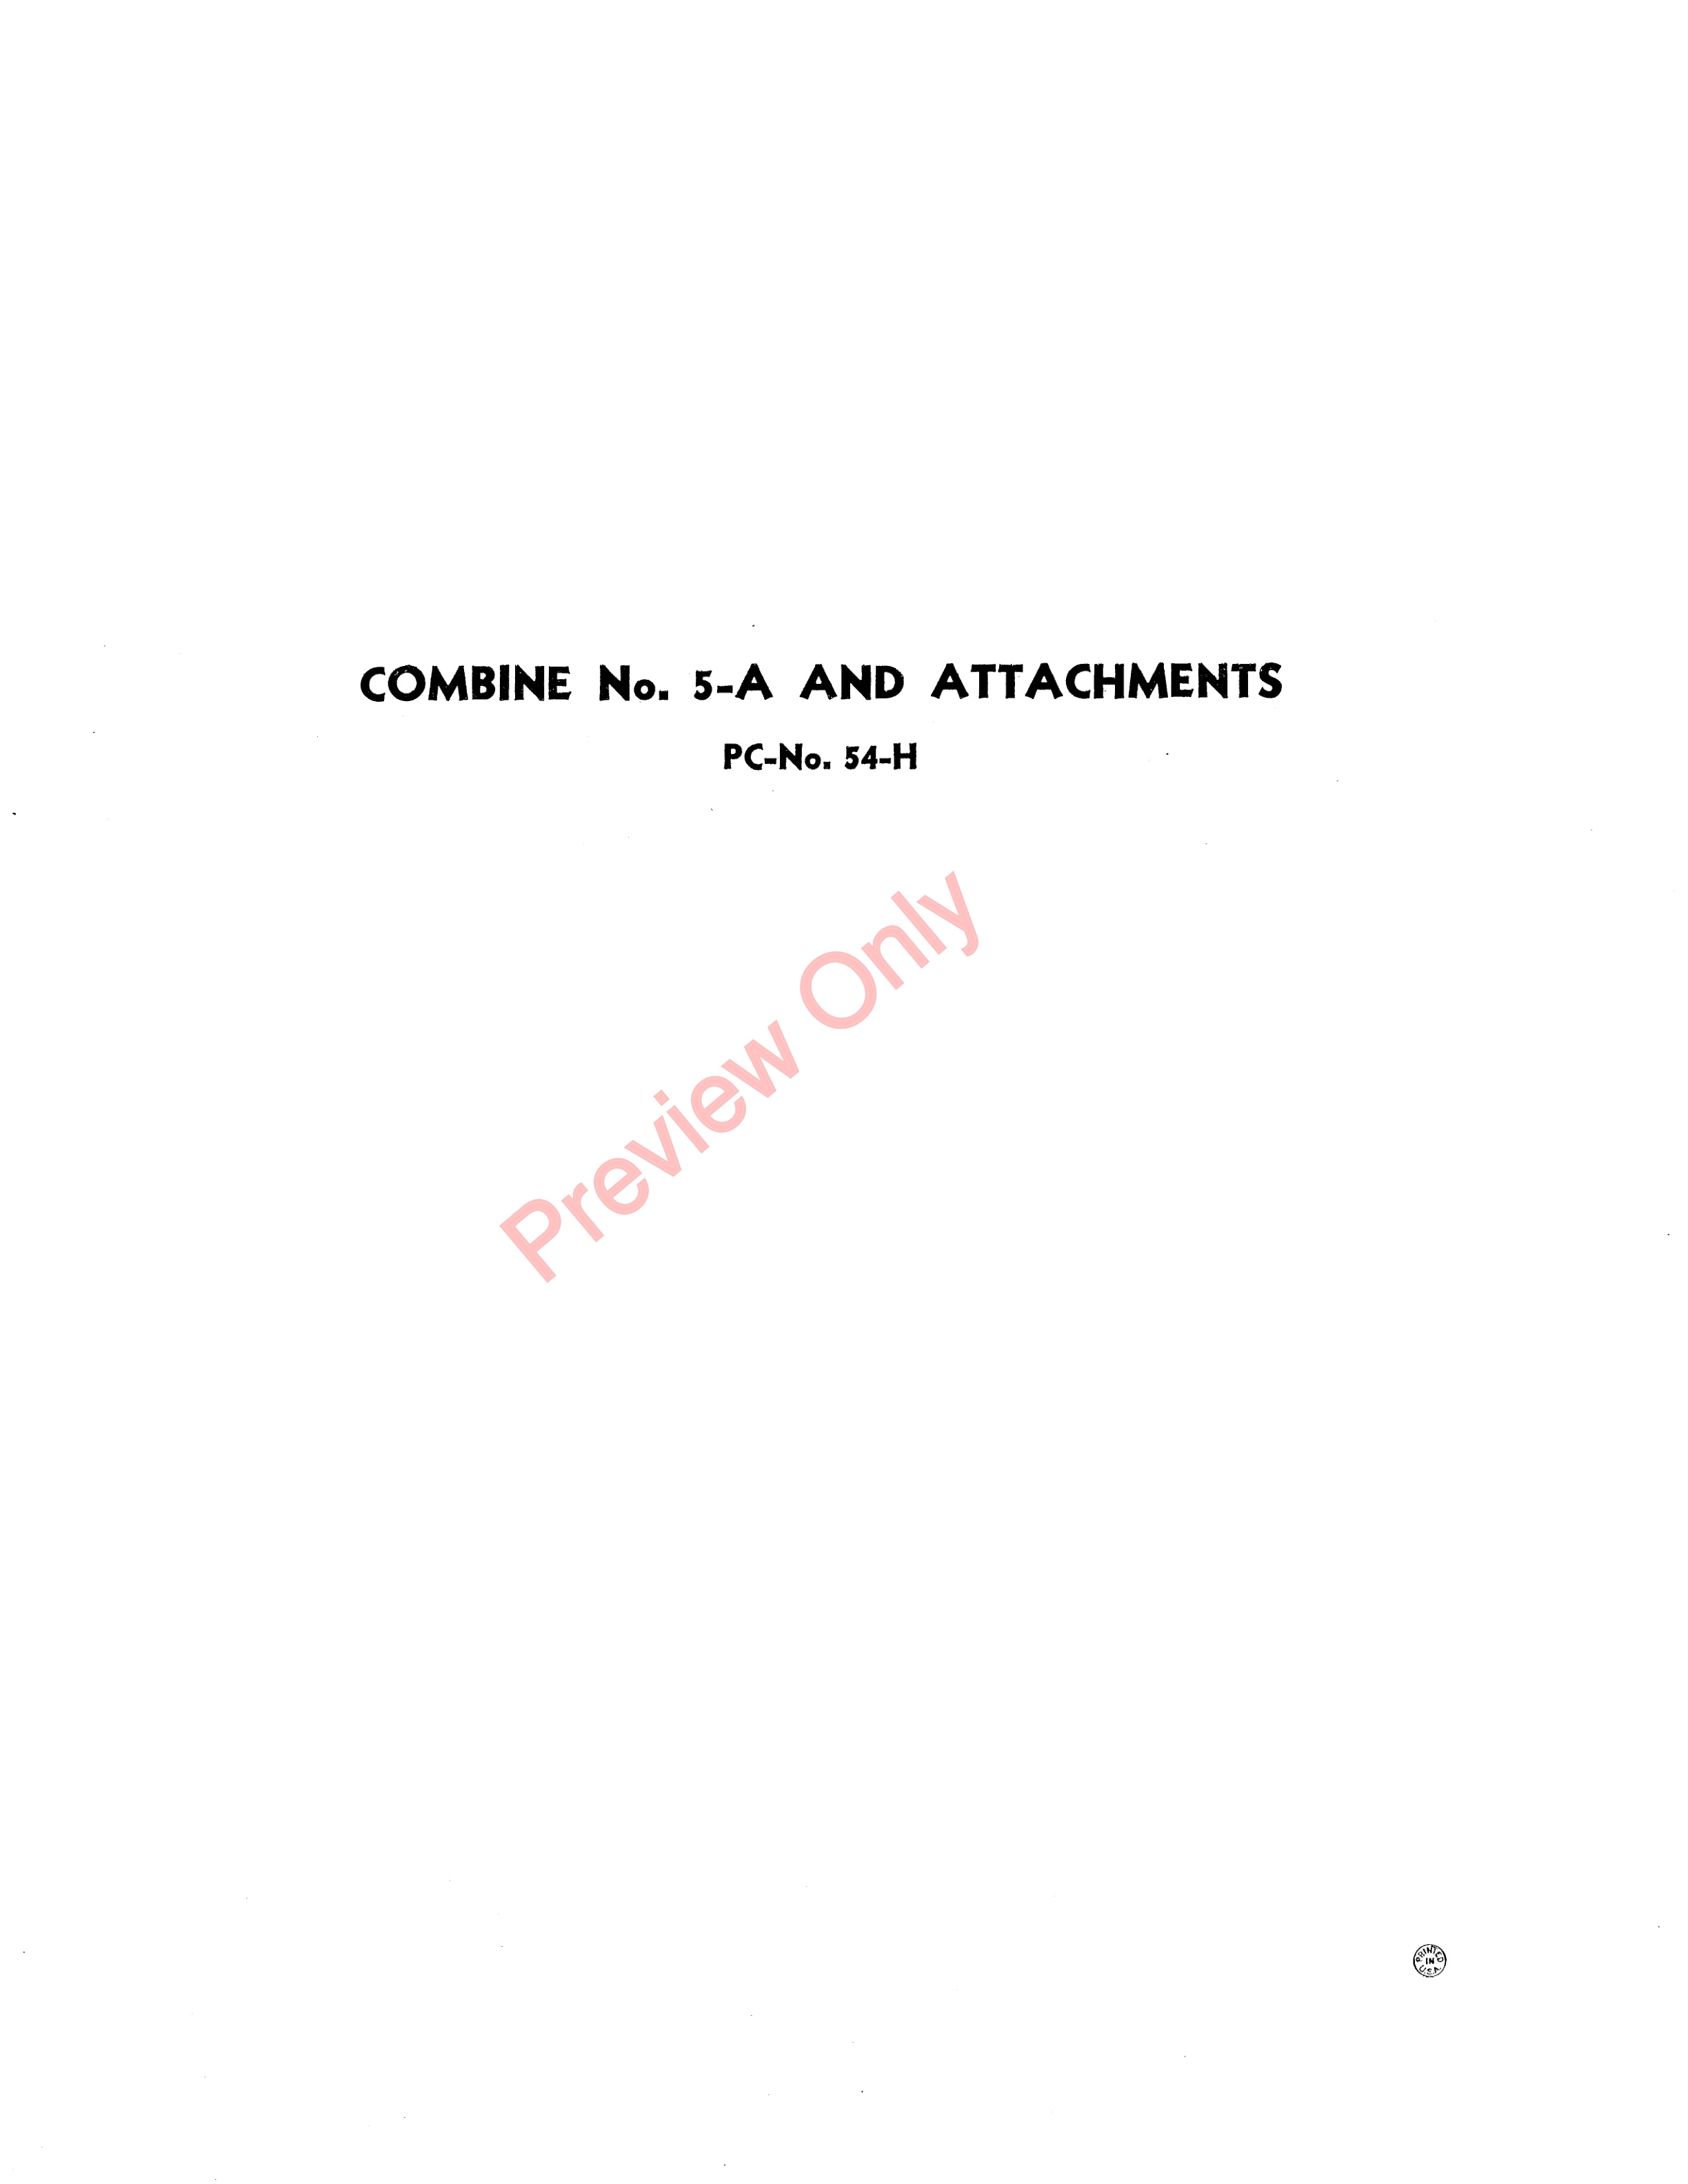 John Deere 5A Combine And Attachments Parts Catalog CAT54H 01JUN45 4